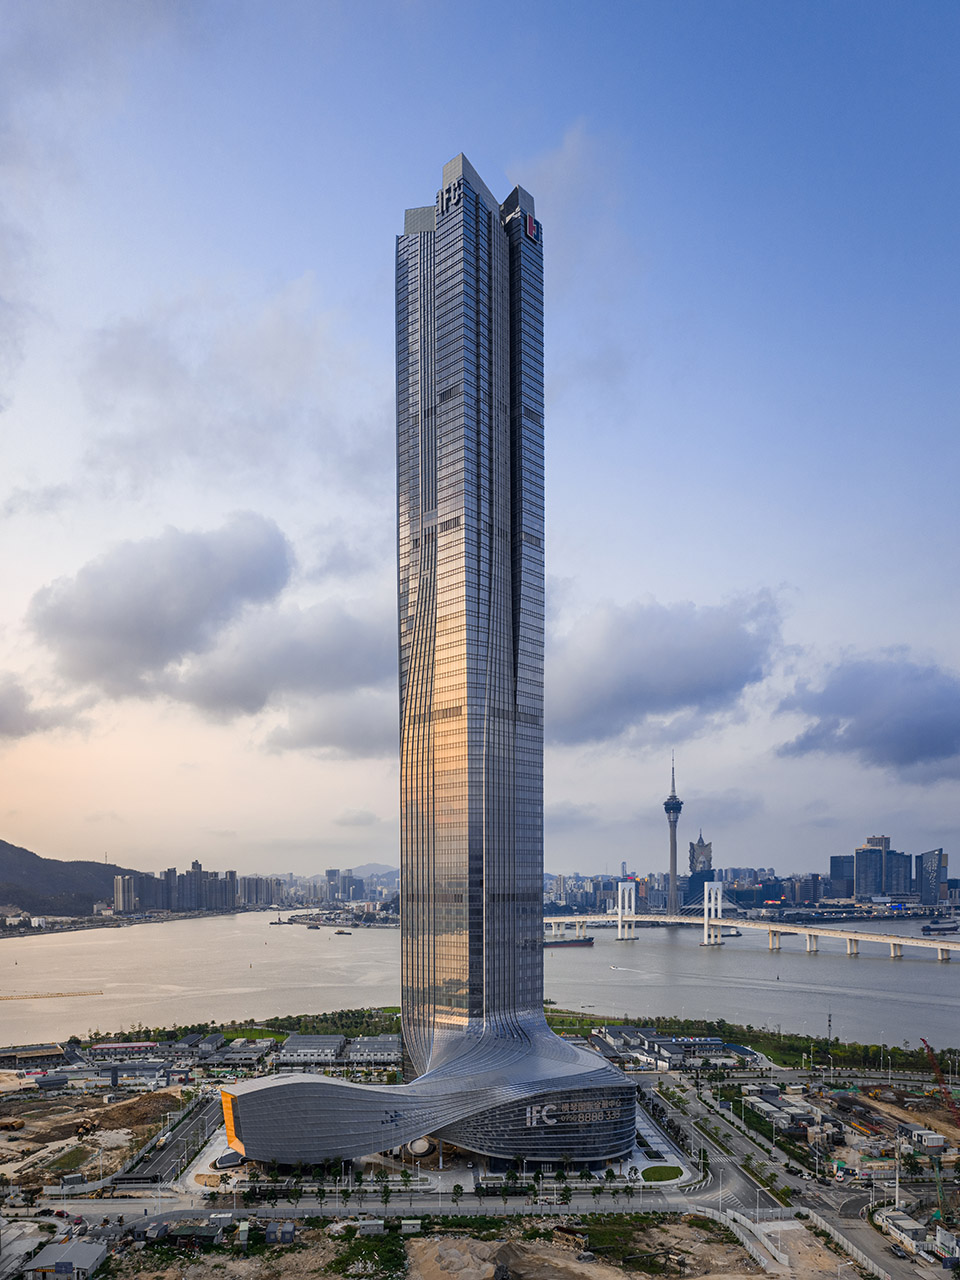 横琴国际金融中心，珠海/珠澳第一高楼，以蛟龙出海打造中国新力量-63